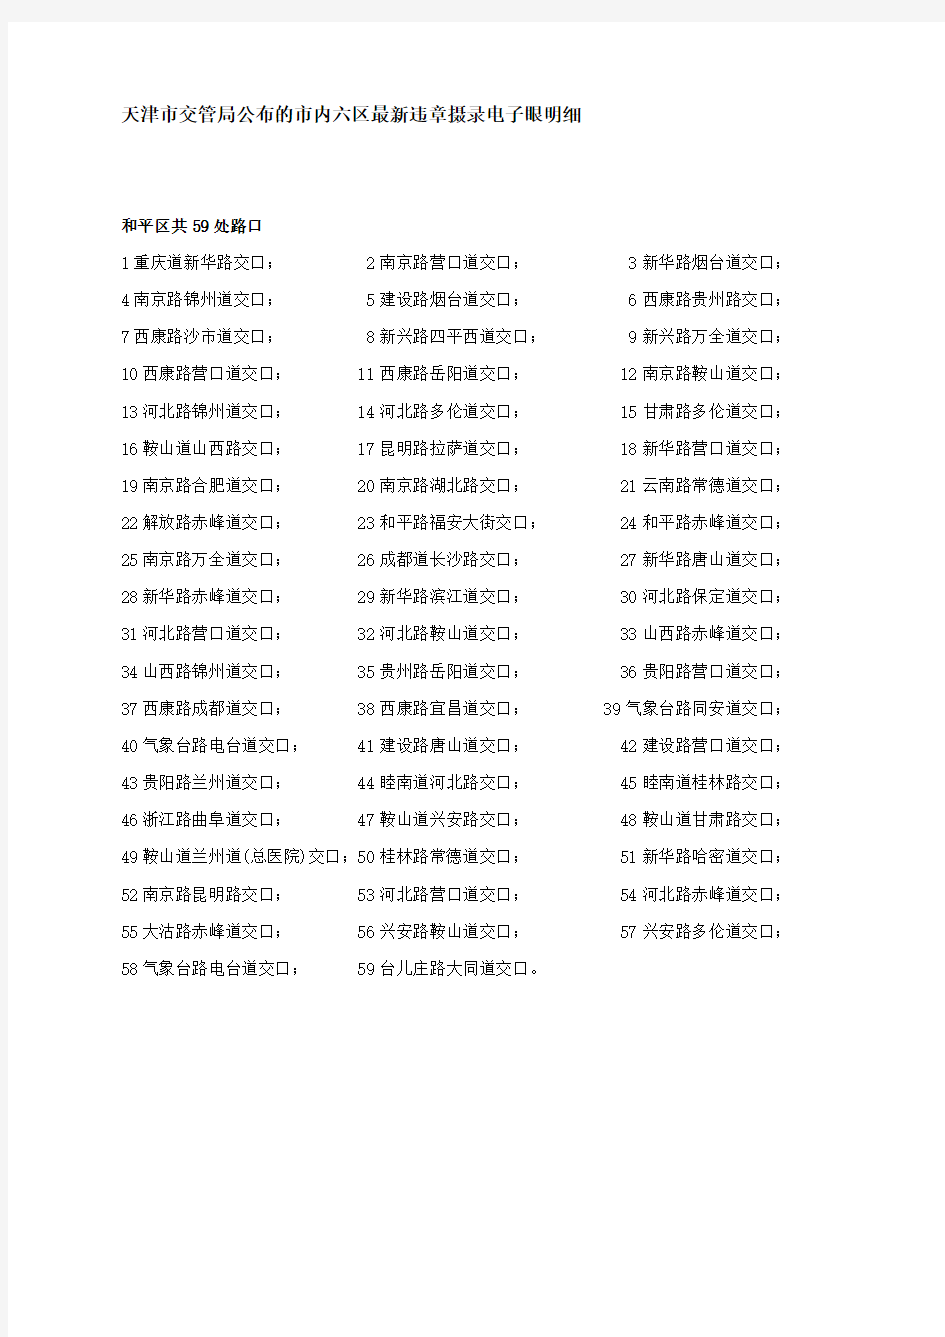 天津市交管局公布的市内六区最新违章摄录电子眼明细及详细位置地图